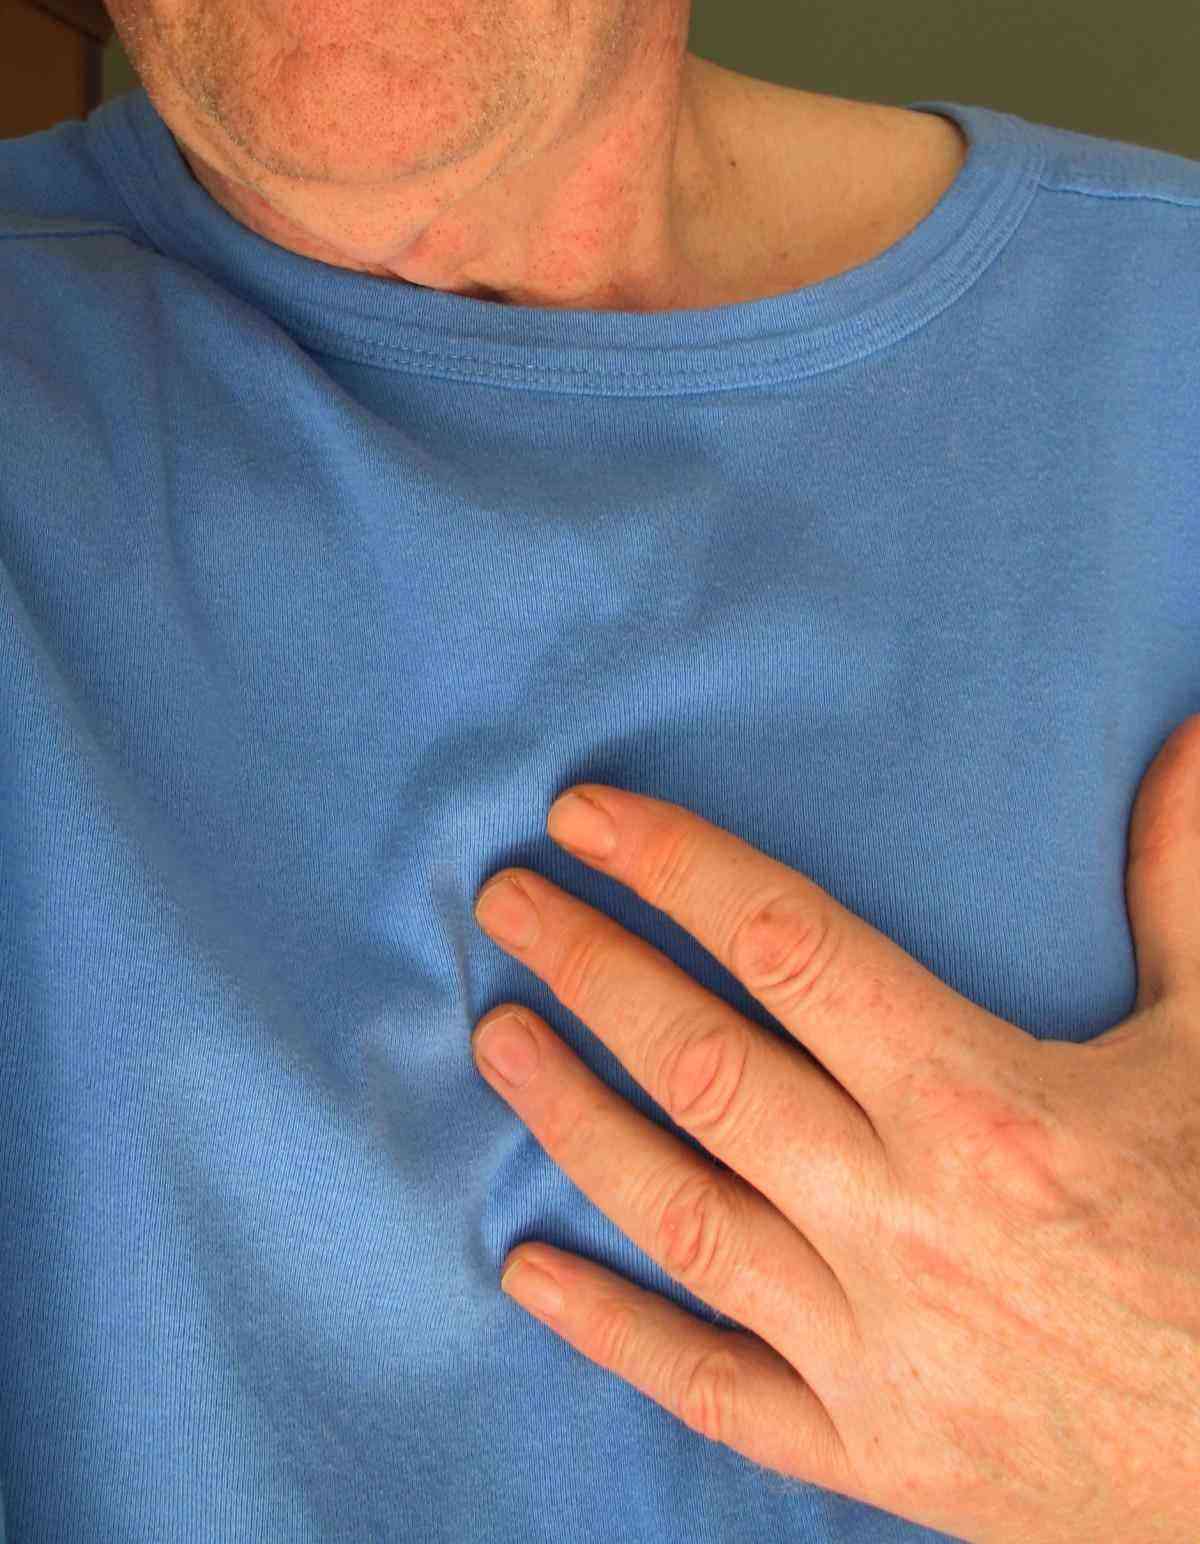 Técnica prevê infarto duas semanas antes - Tecnologia - Estado de